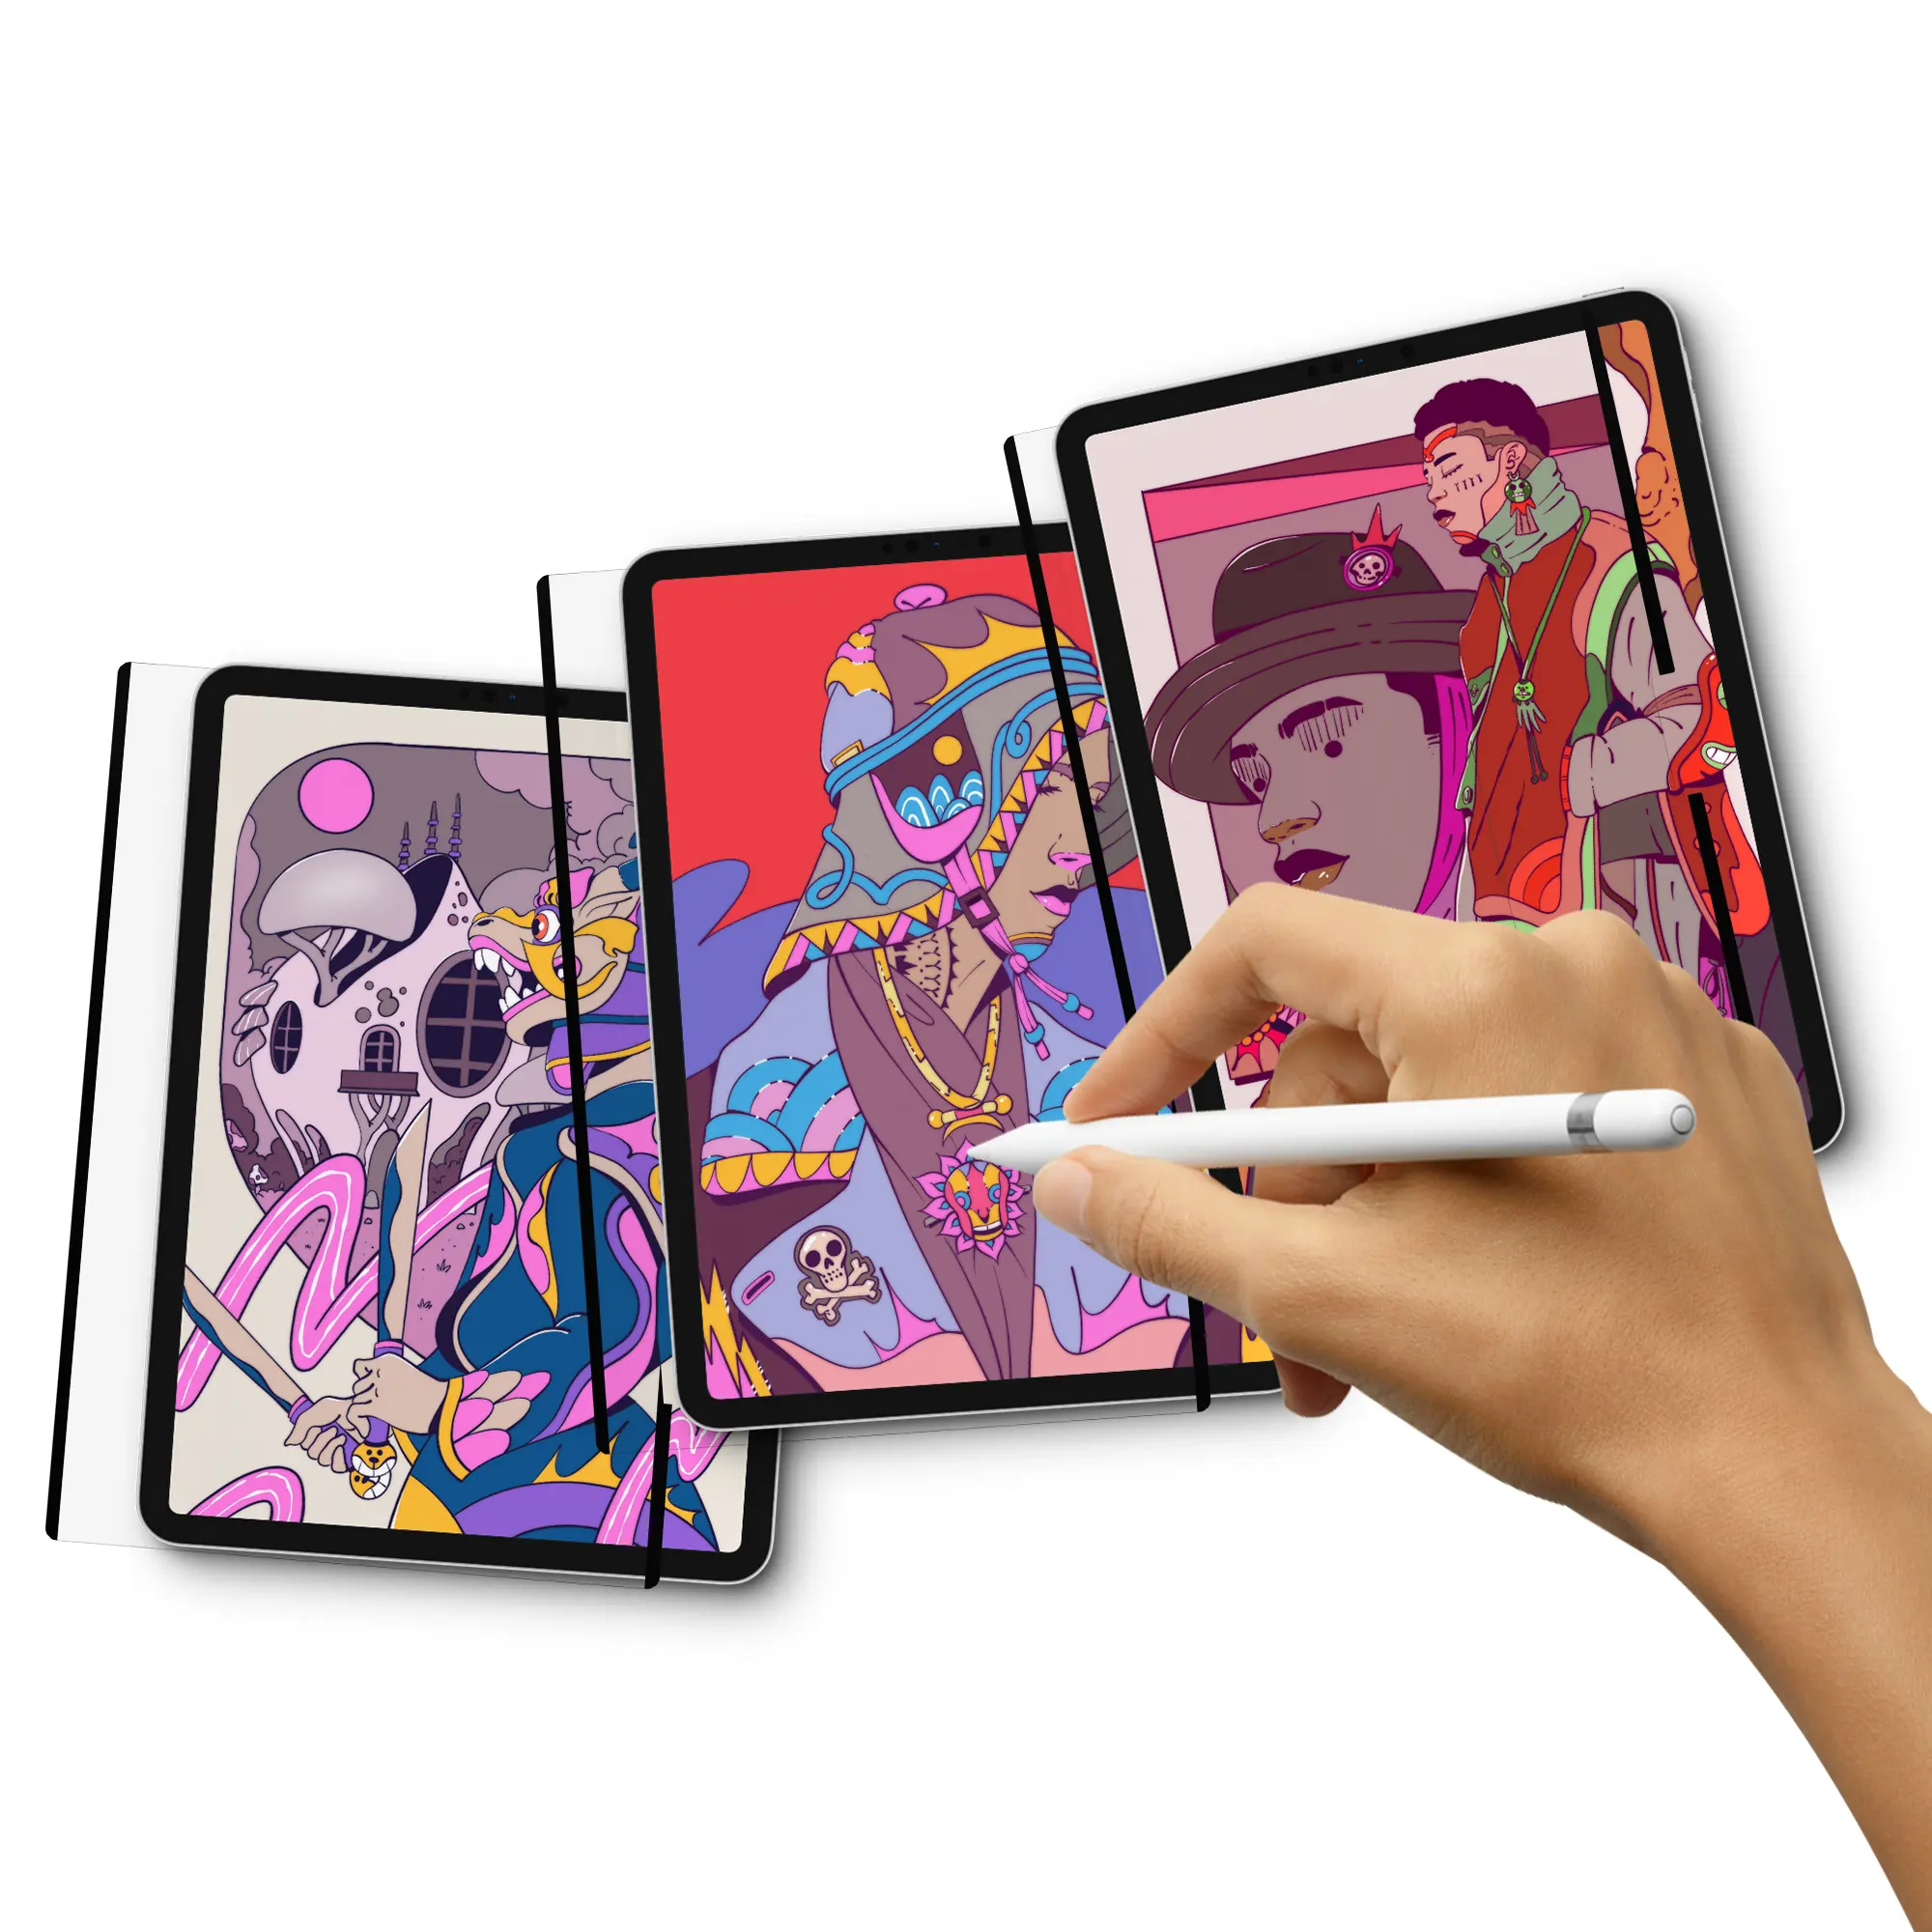 رقاقة حماية للشاشة بأبعاد مختلفة مصنوعة من الورق المقاوم للوهج غير اللامع من ANANK مخصصة لهواتف iPad 5/6 0 بشاشة حجمها 9.7 بوصة